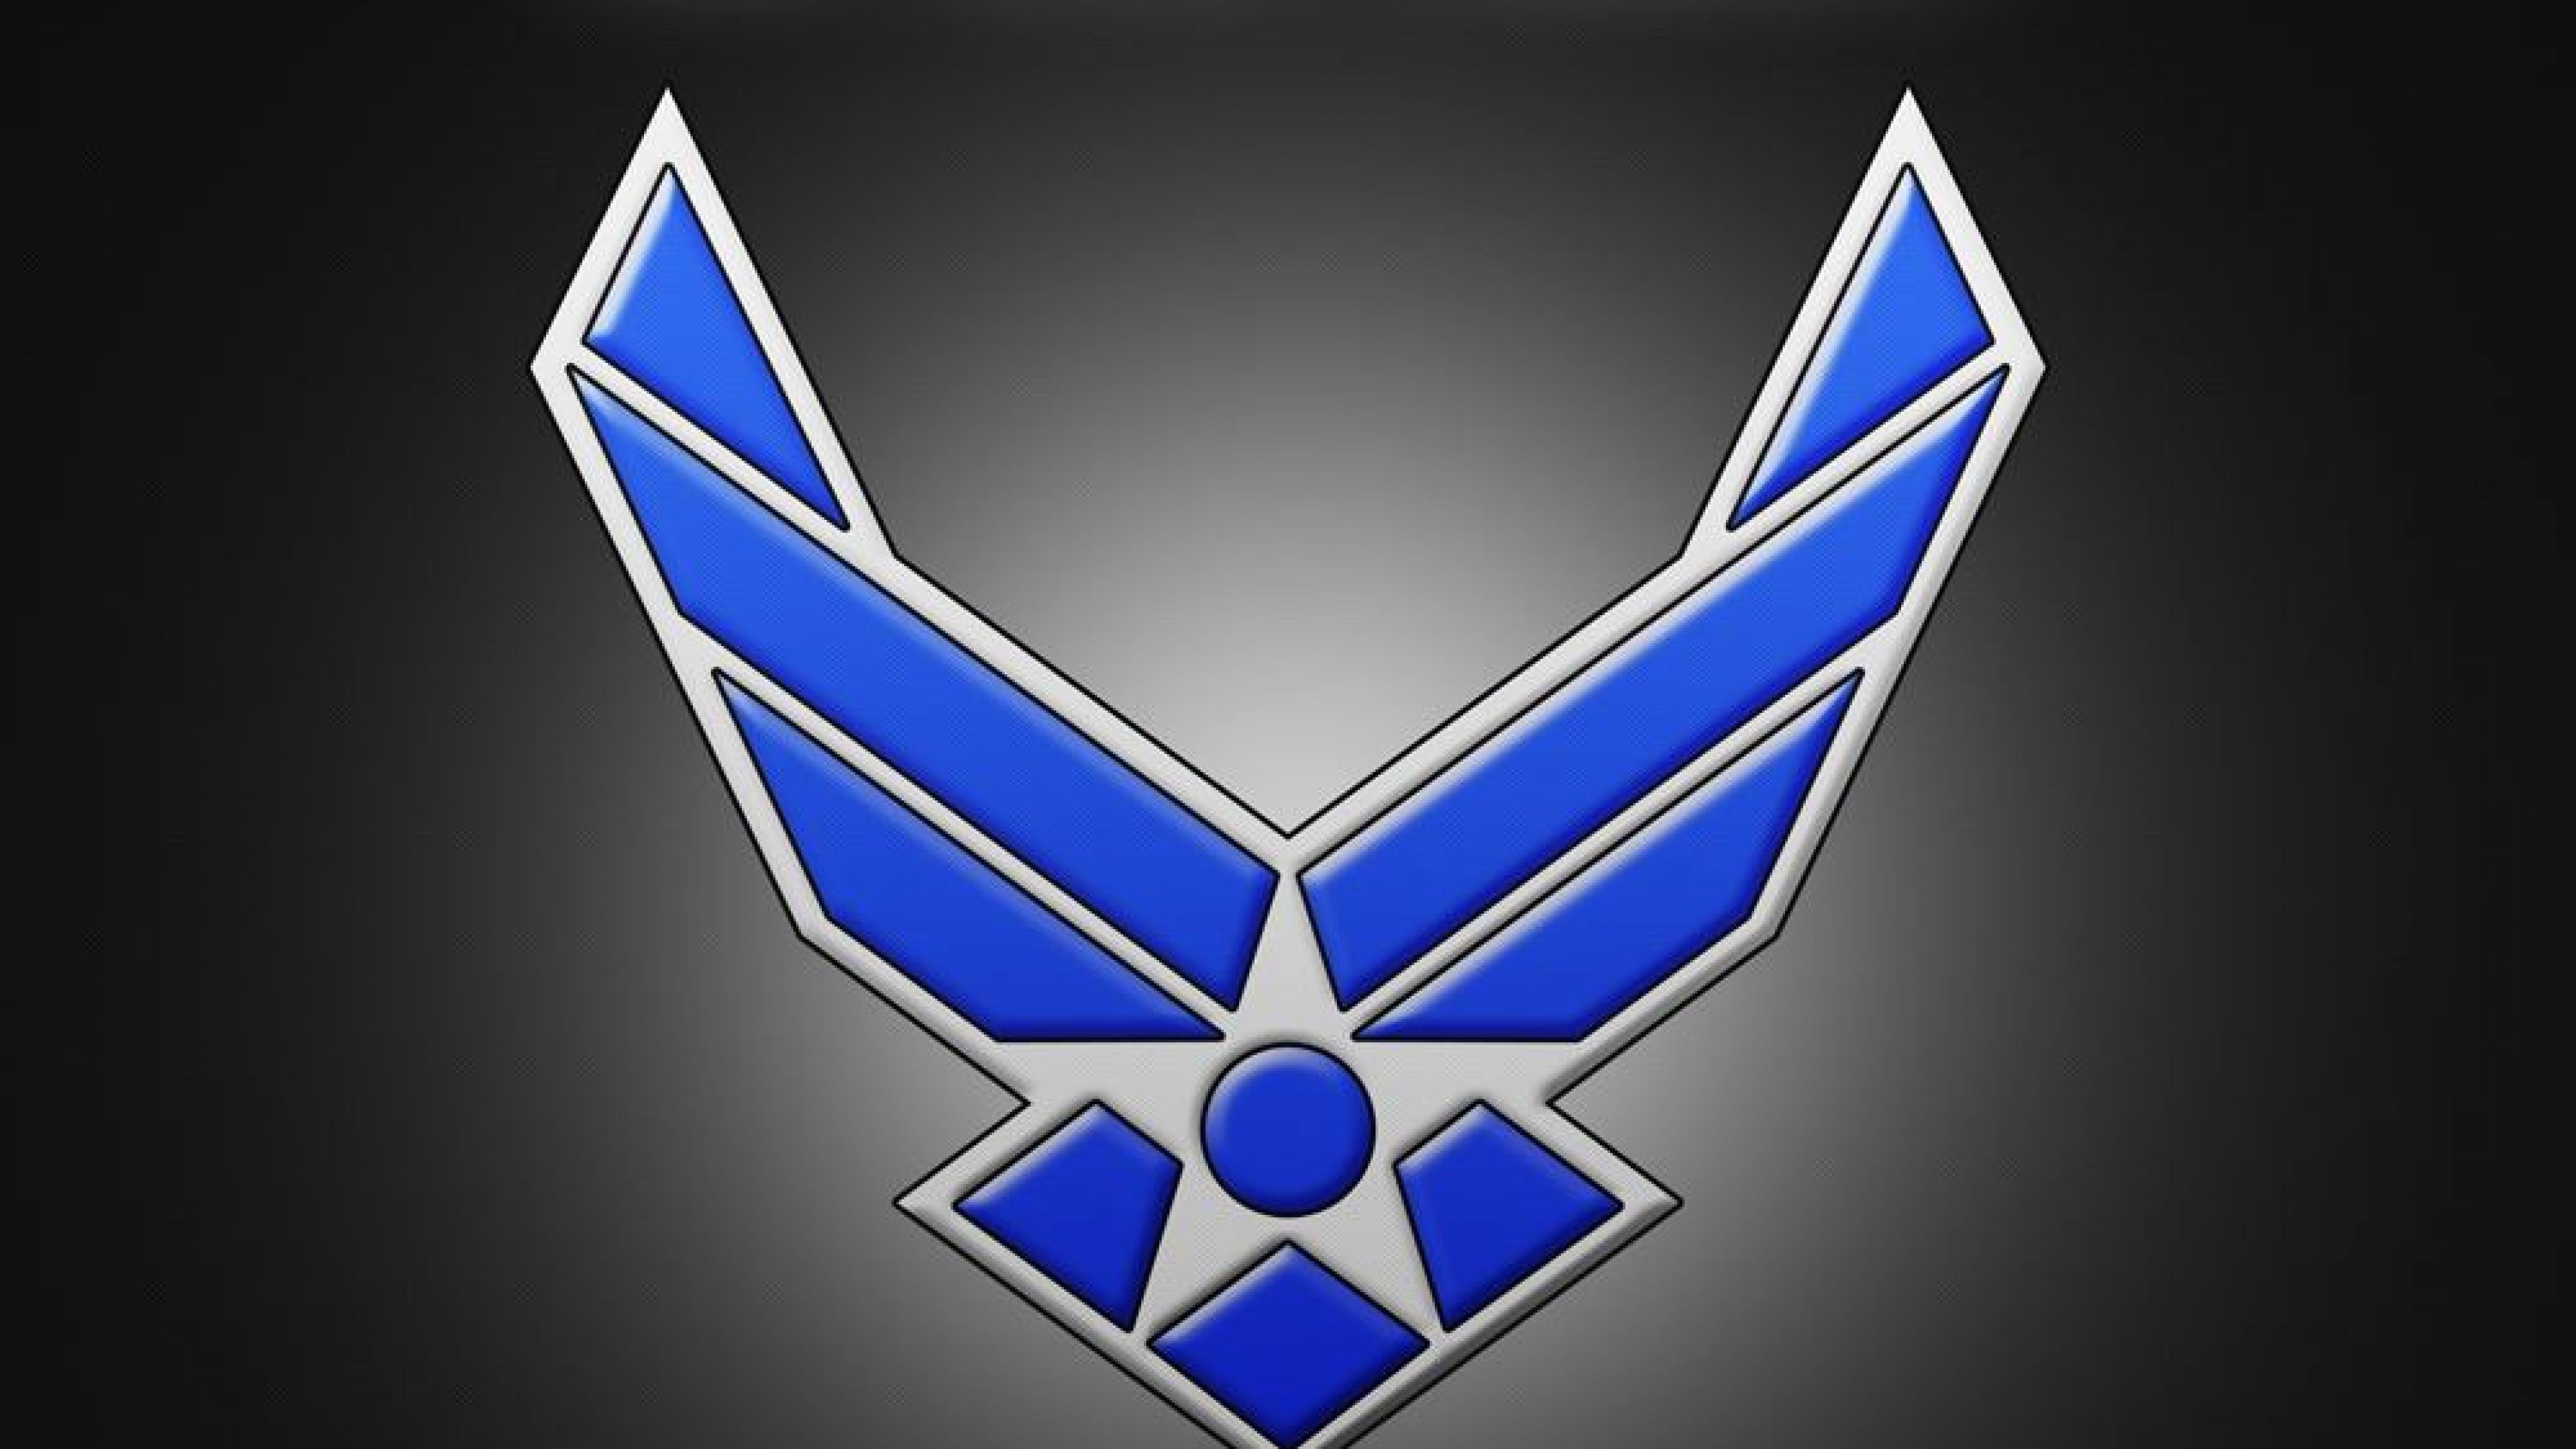 indische luftwaffe logo hd wallpaper,blau,emblem,symbol,elektrisches blau,symmetrie